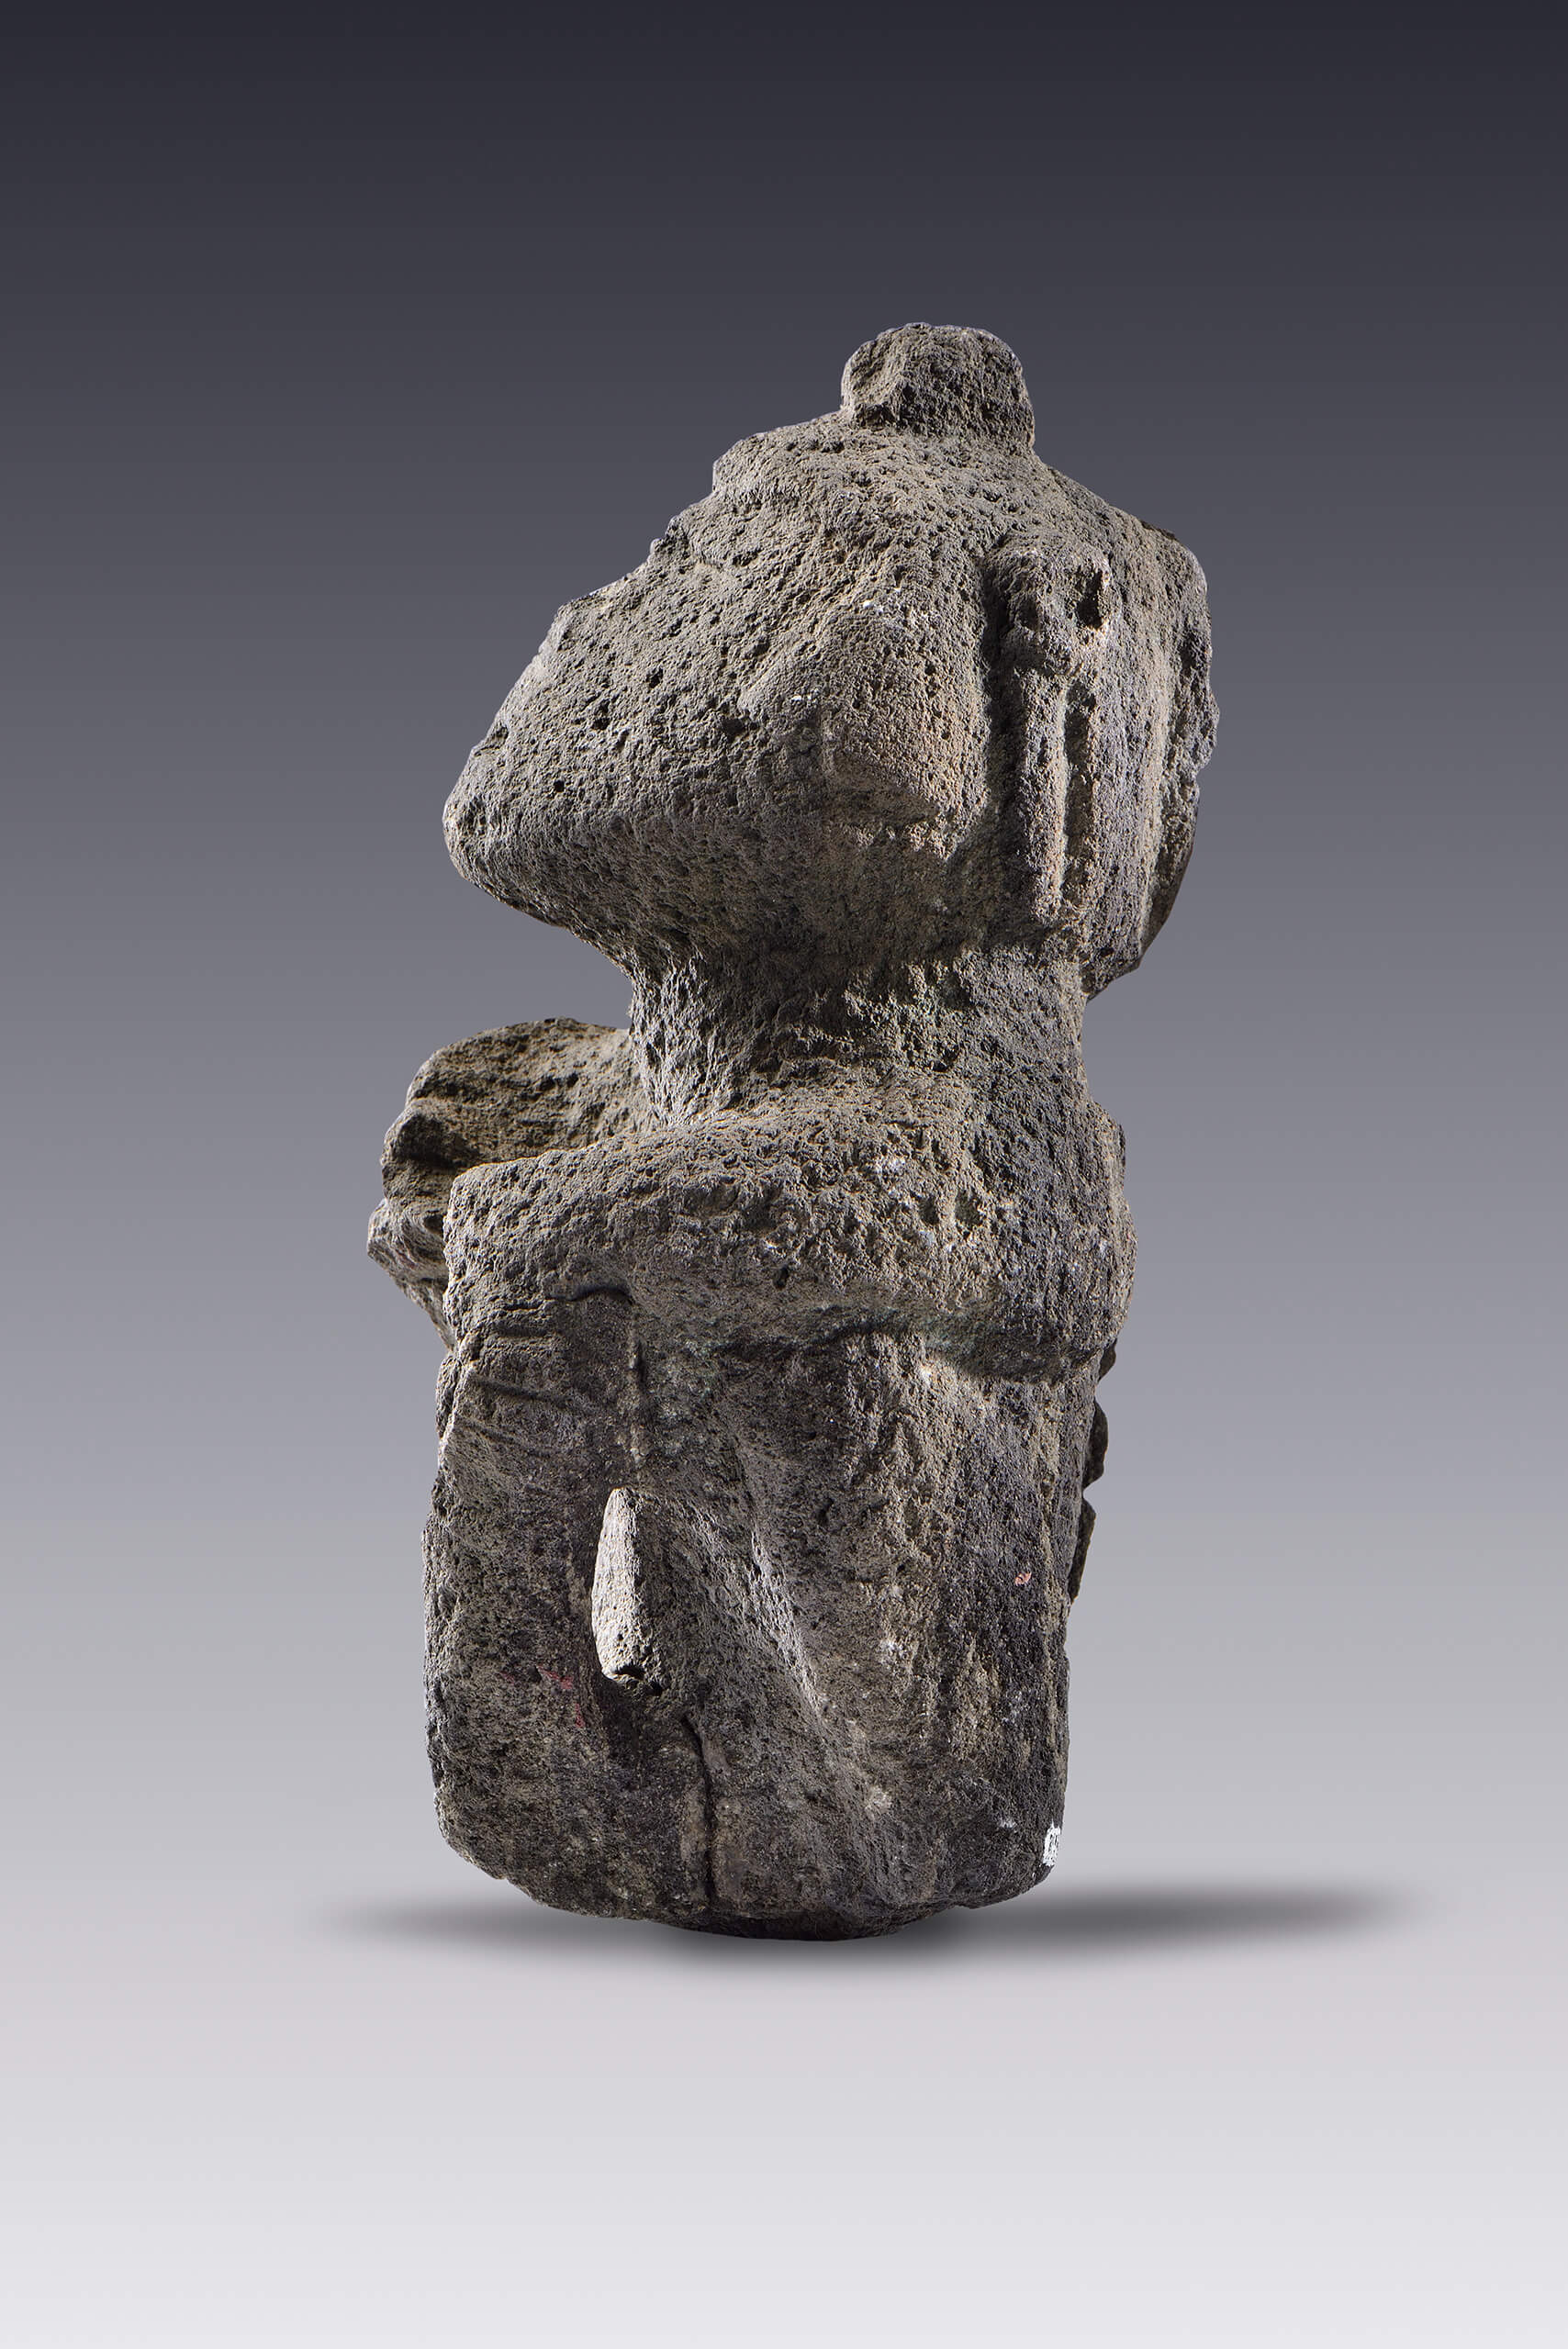 Hombre sedente | El tiempo en las cosas II. Salas de Arte Contemporáneo | Museo Amparo, Puebla